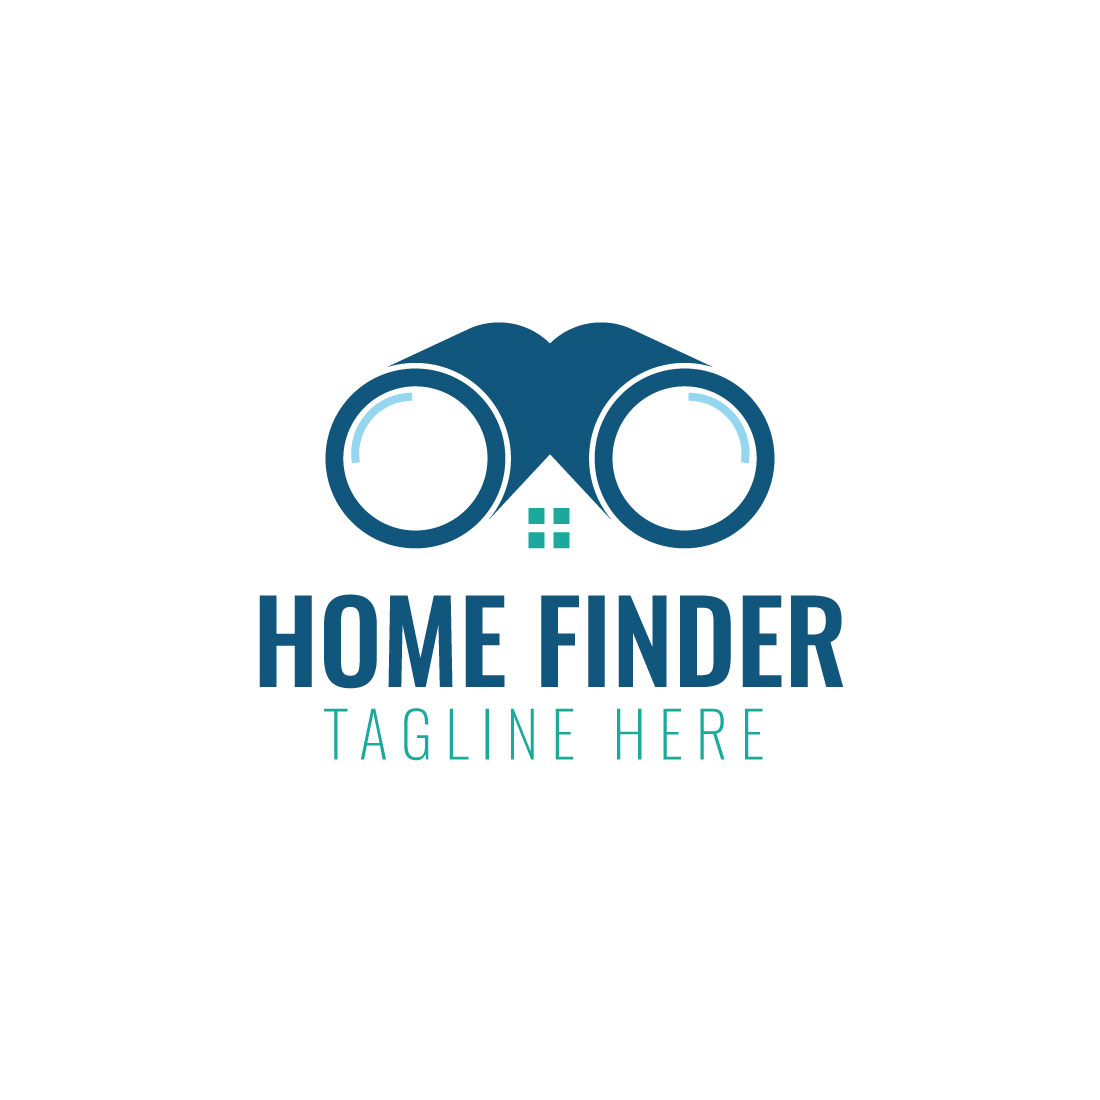 Home Finder Logo cover image.